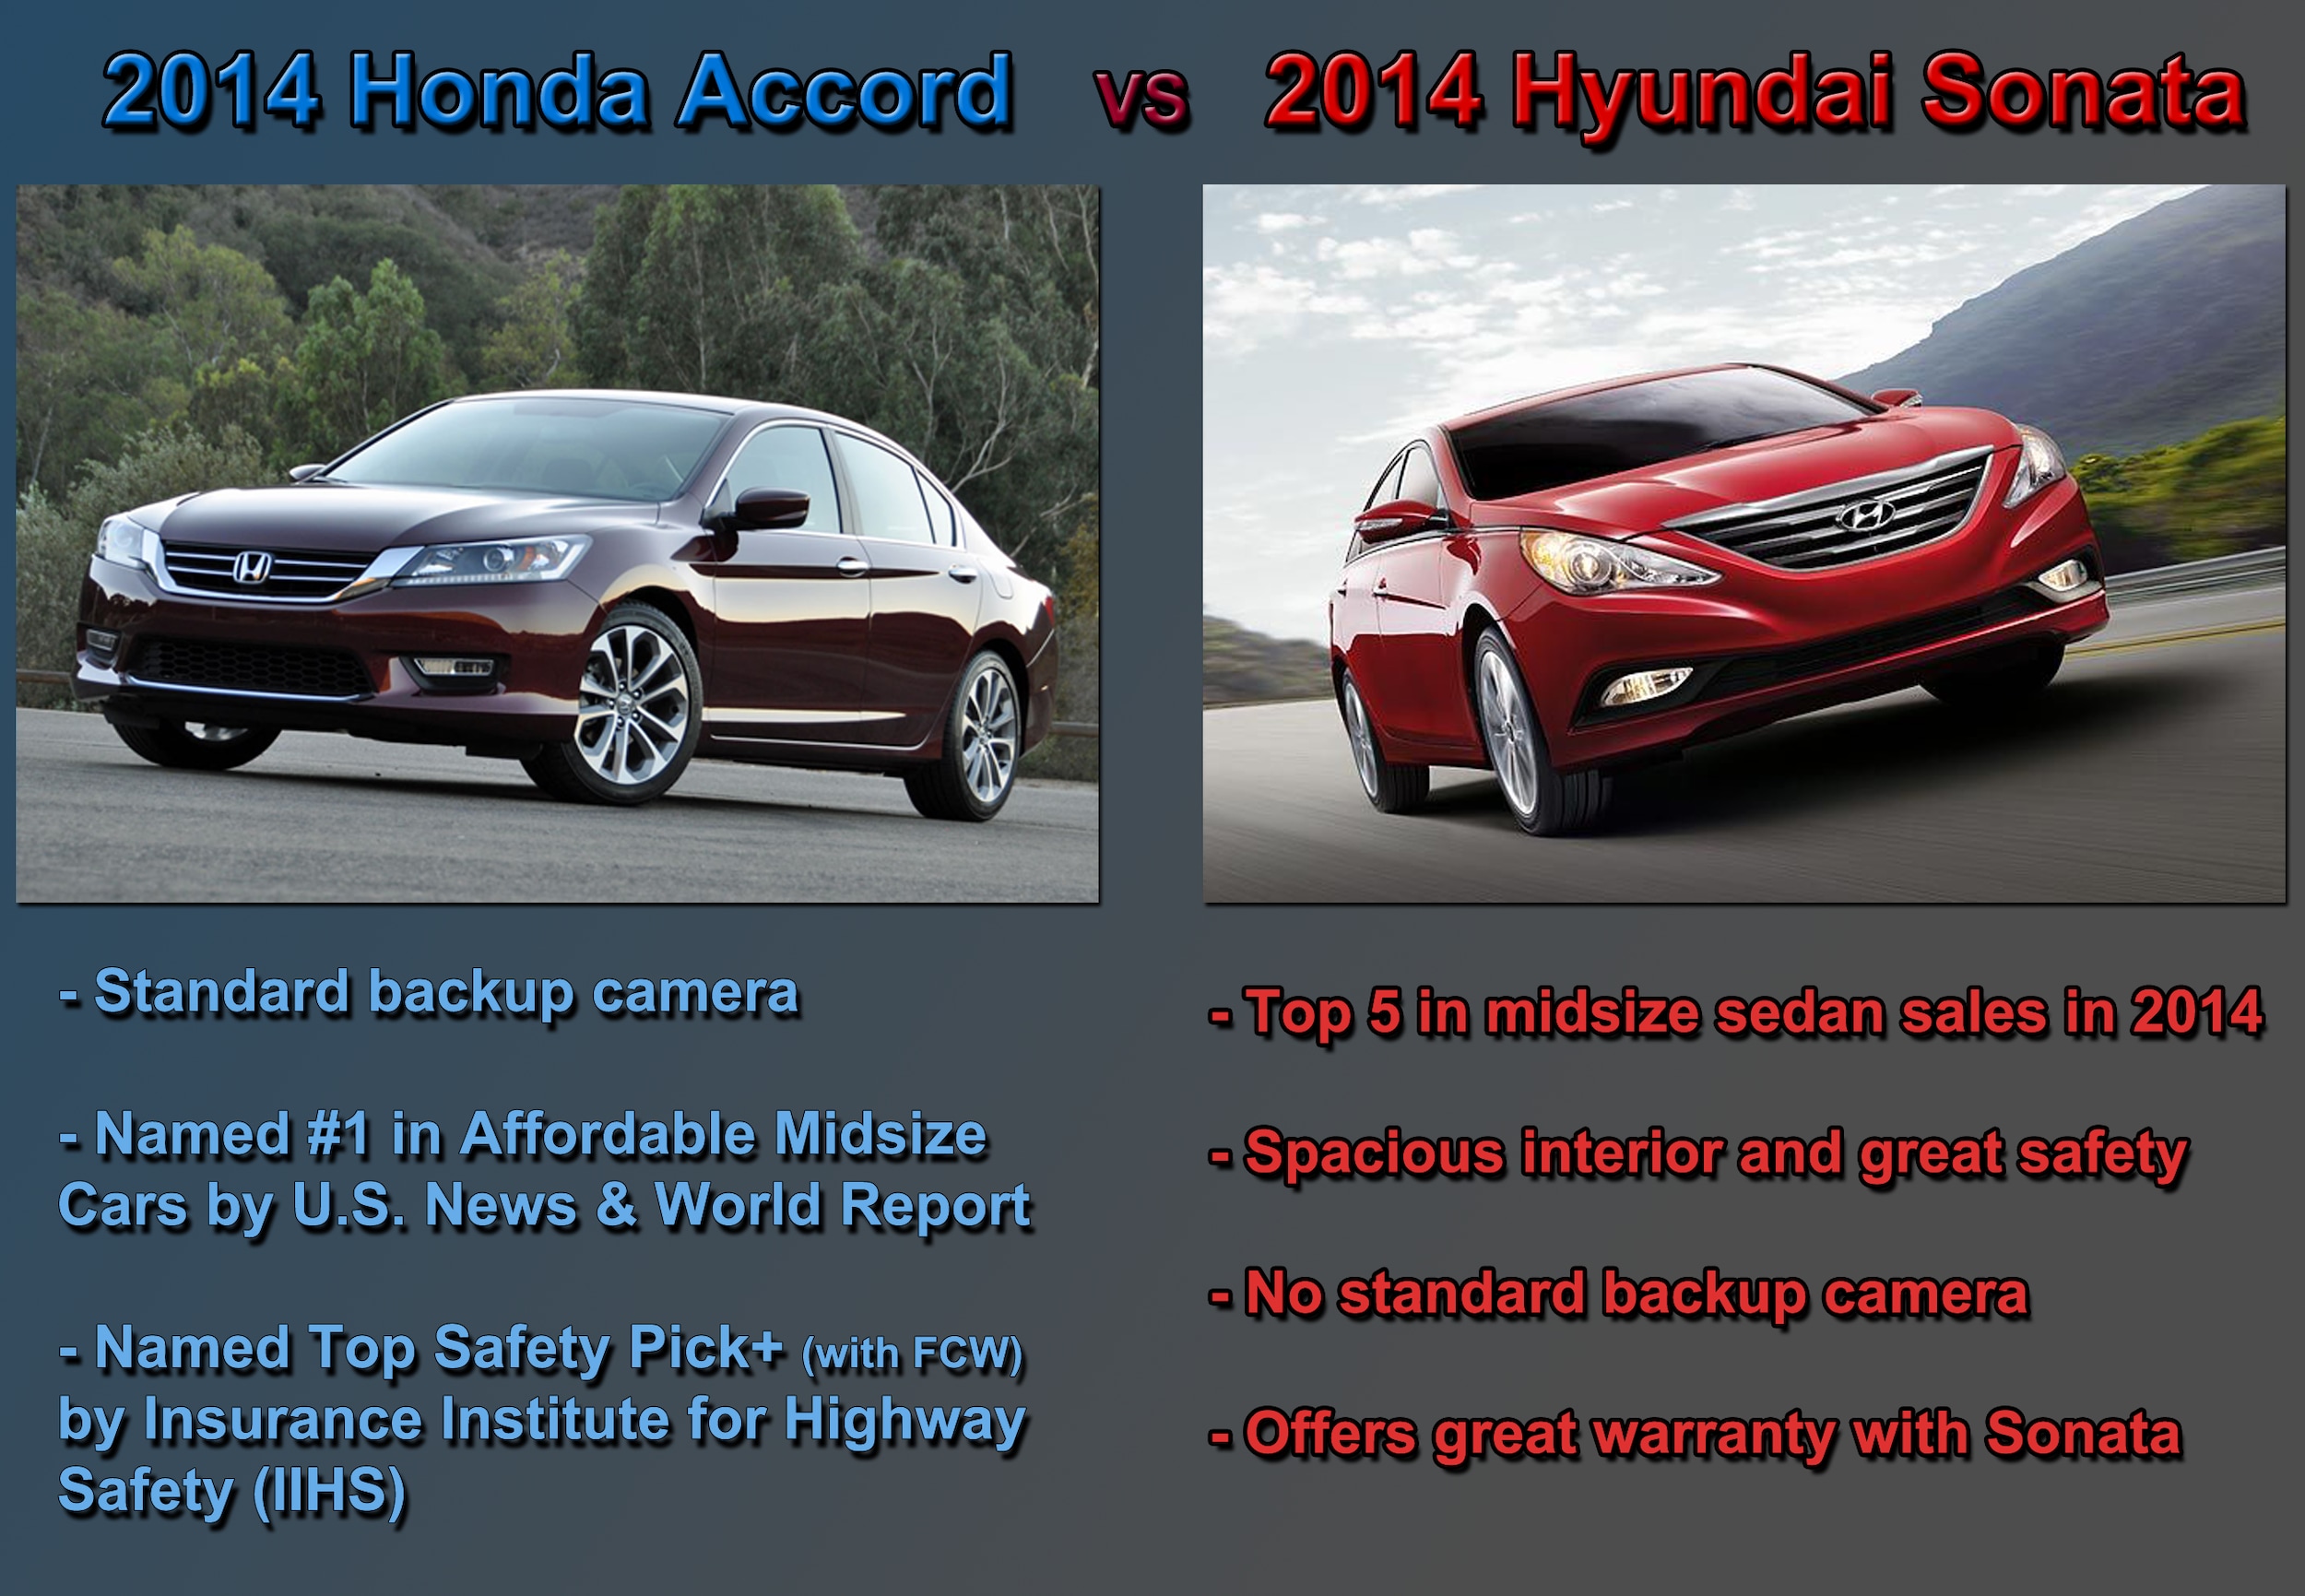 Hyundai sonata vs honda accord 2014 #3